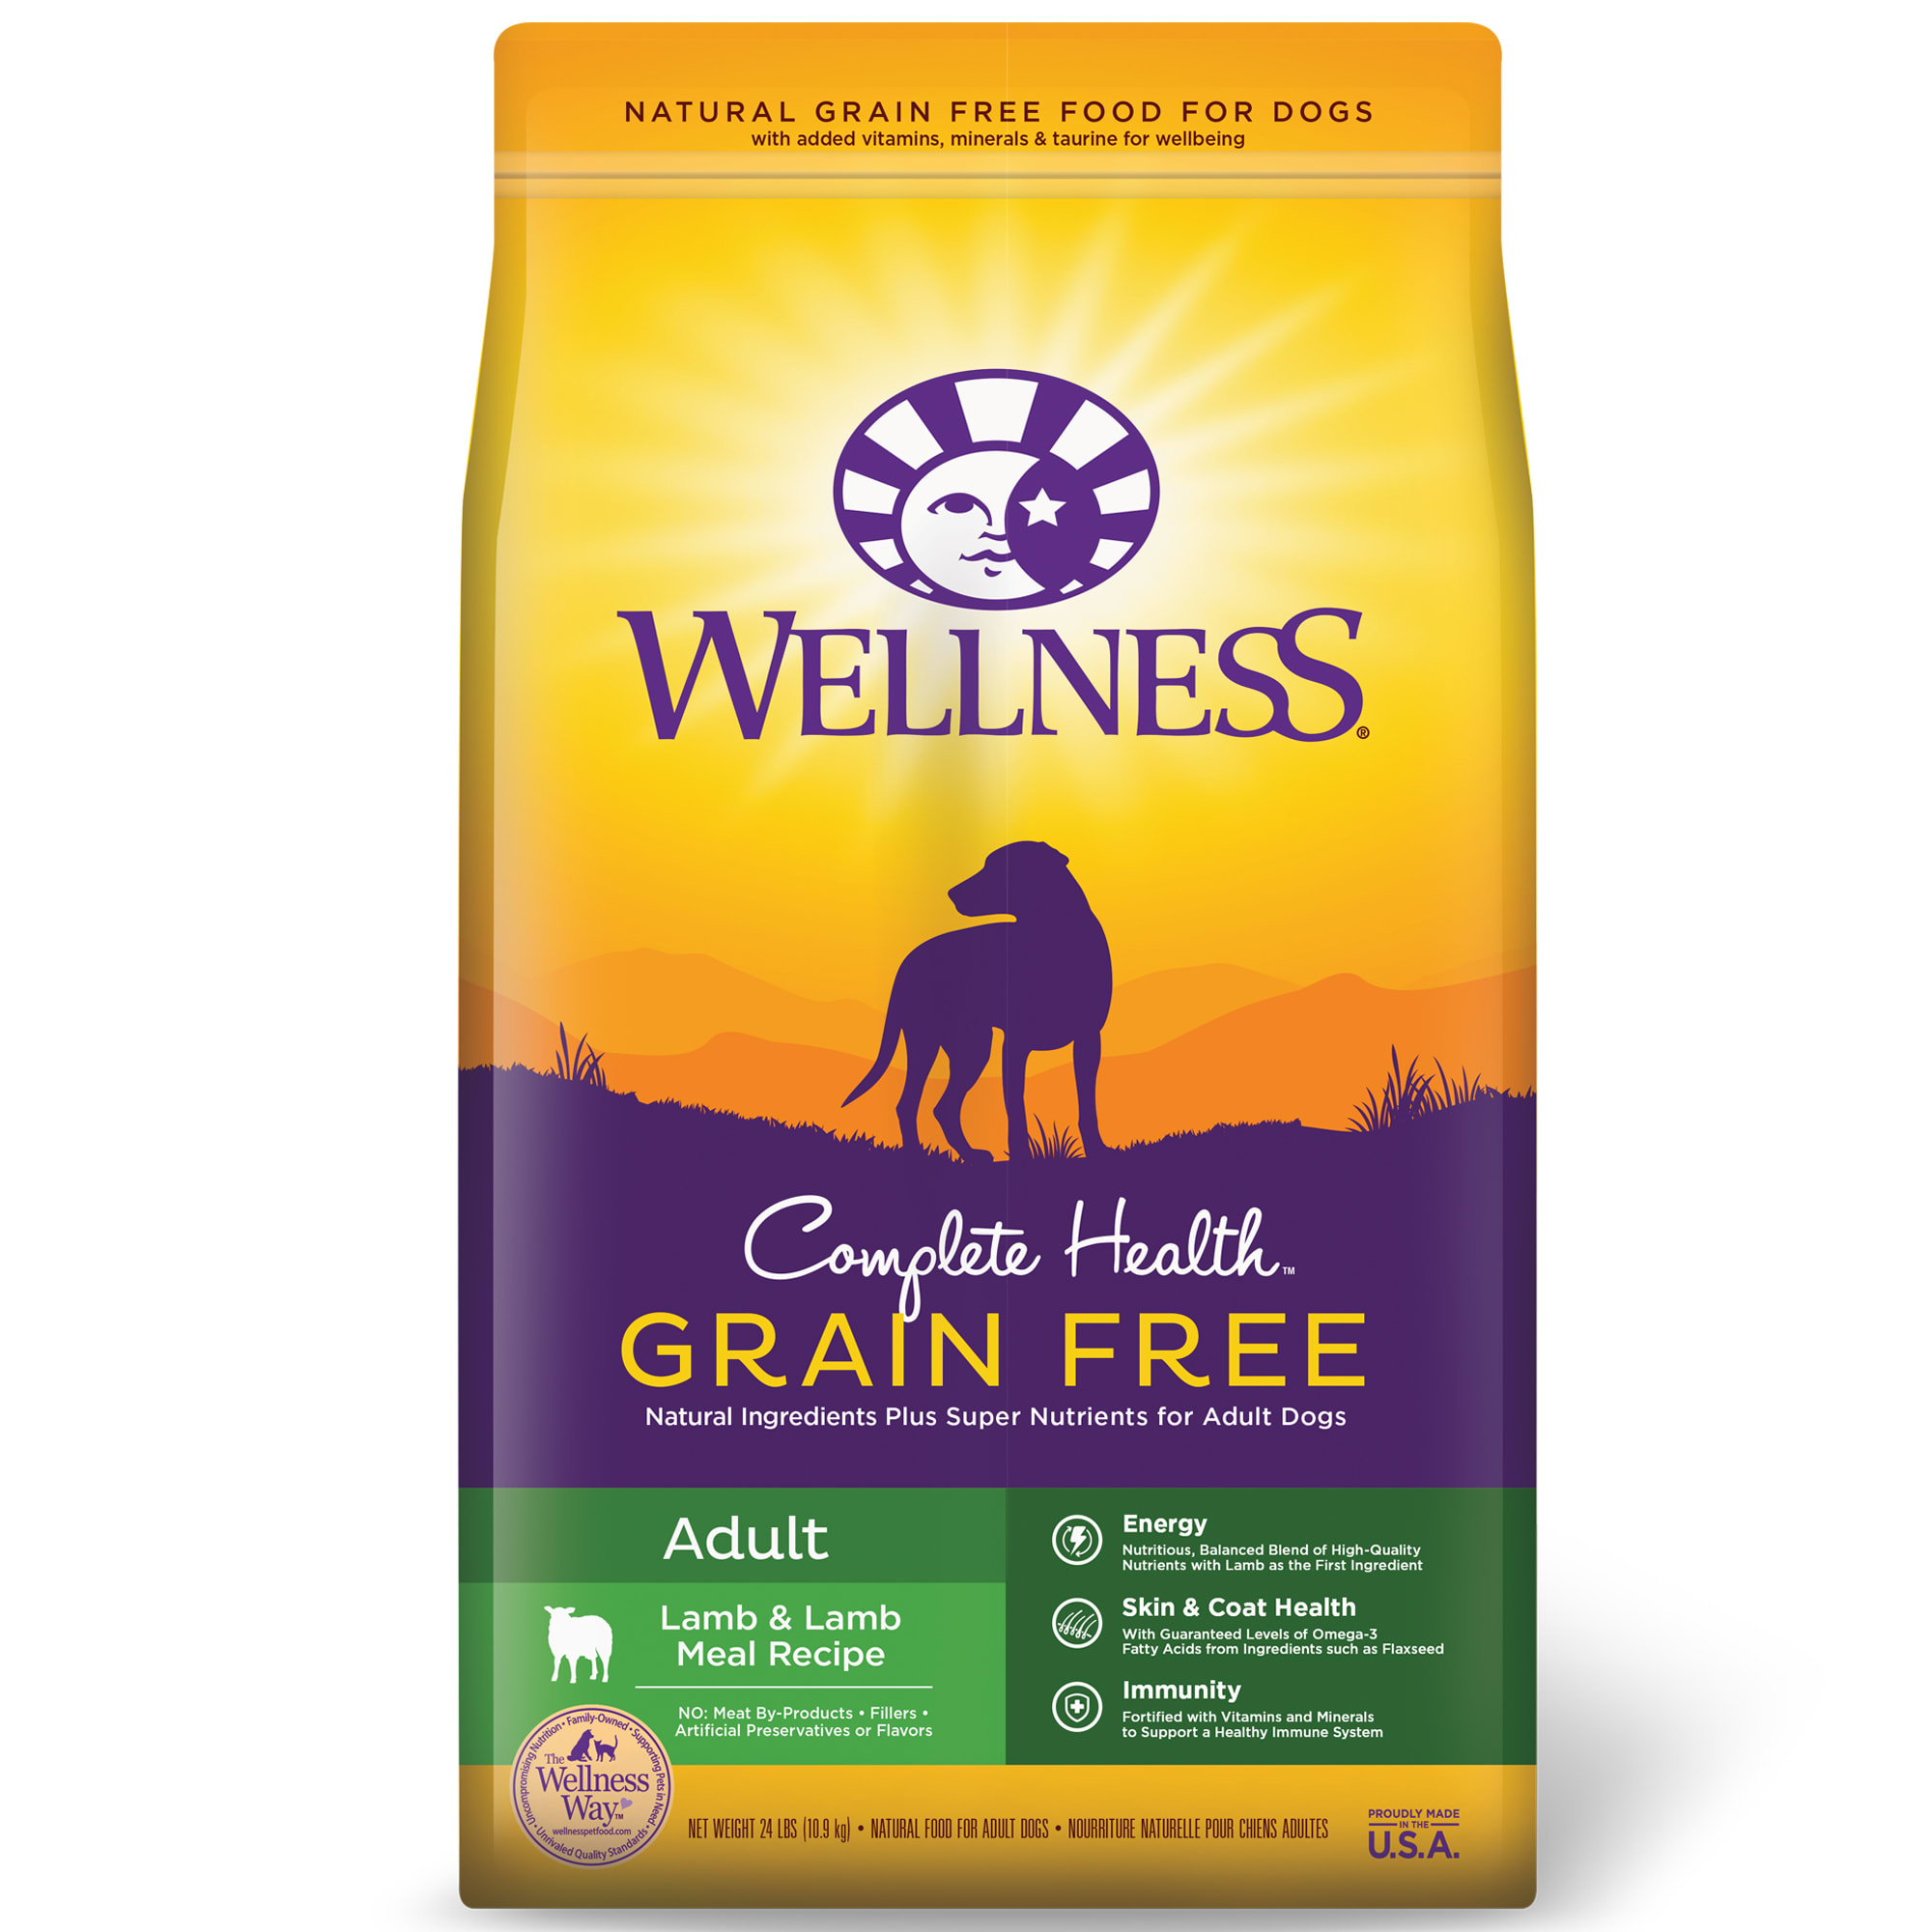 Nature Recipe Dog Food Reviews Grain Free | Dandk Organizer